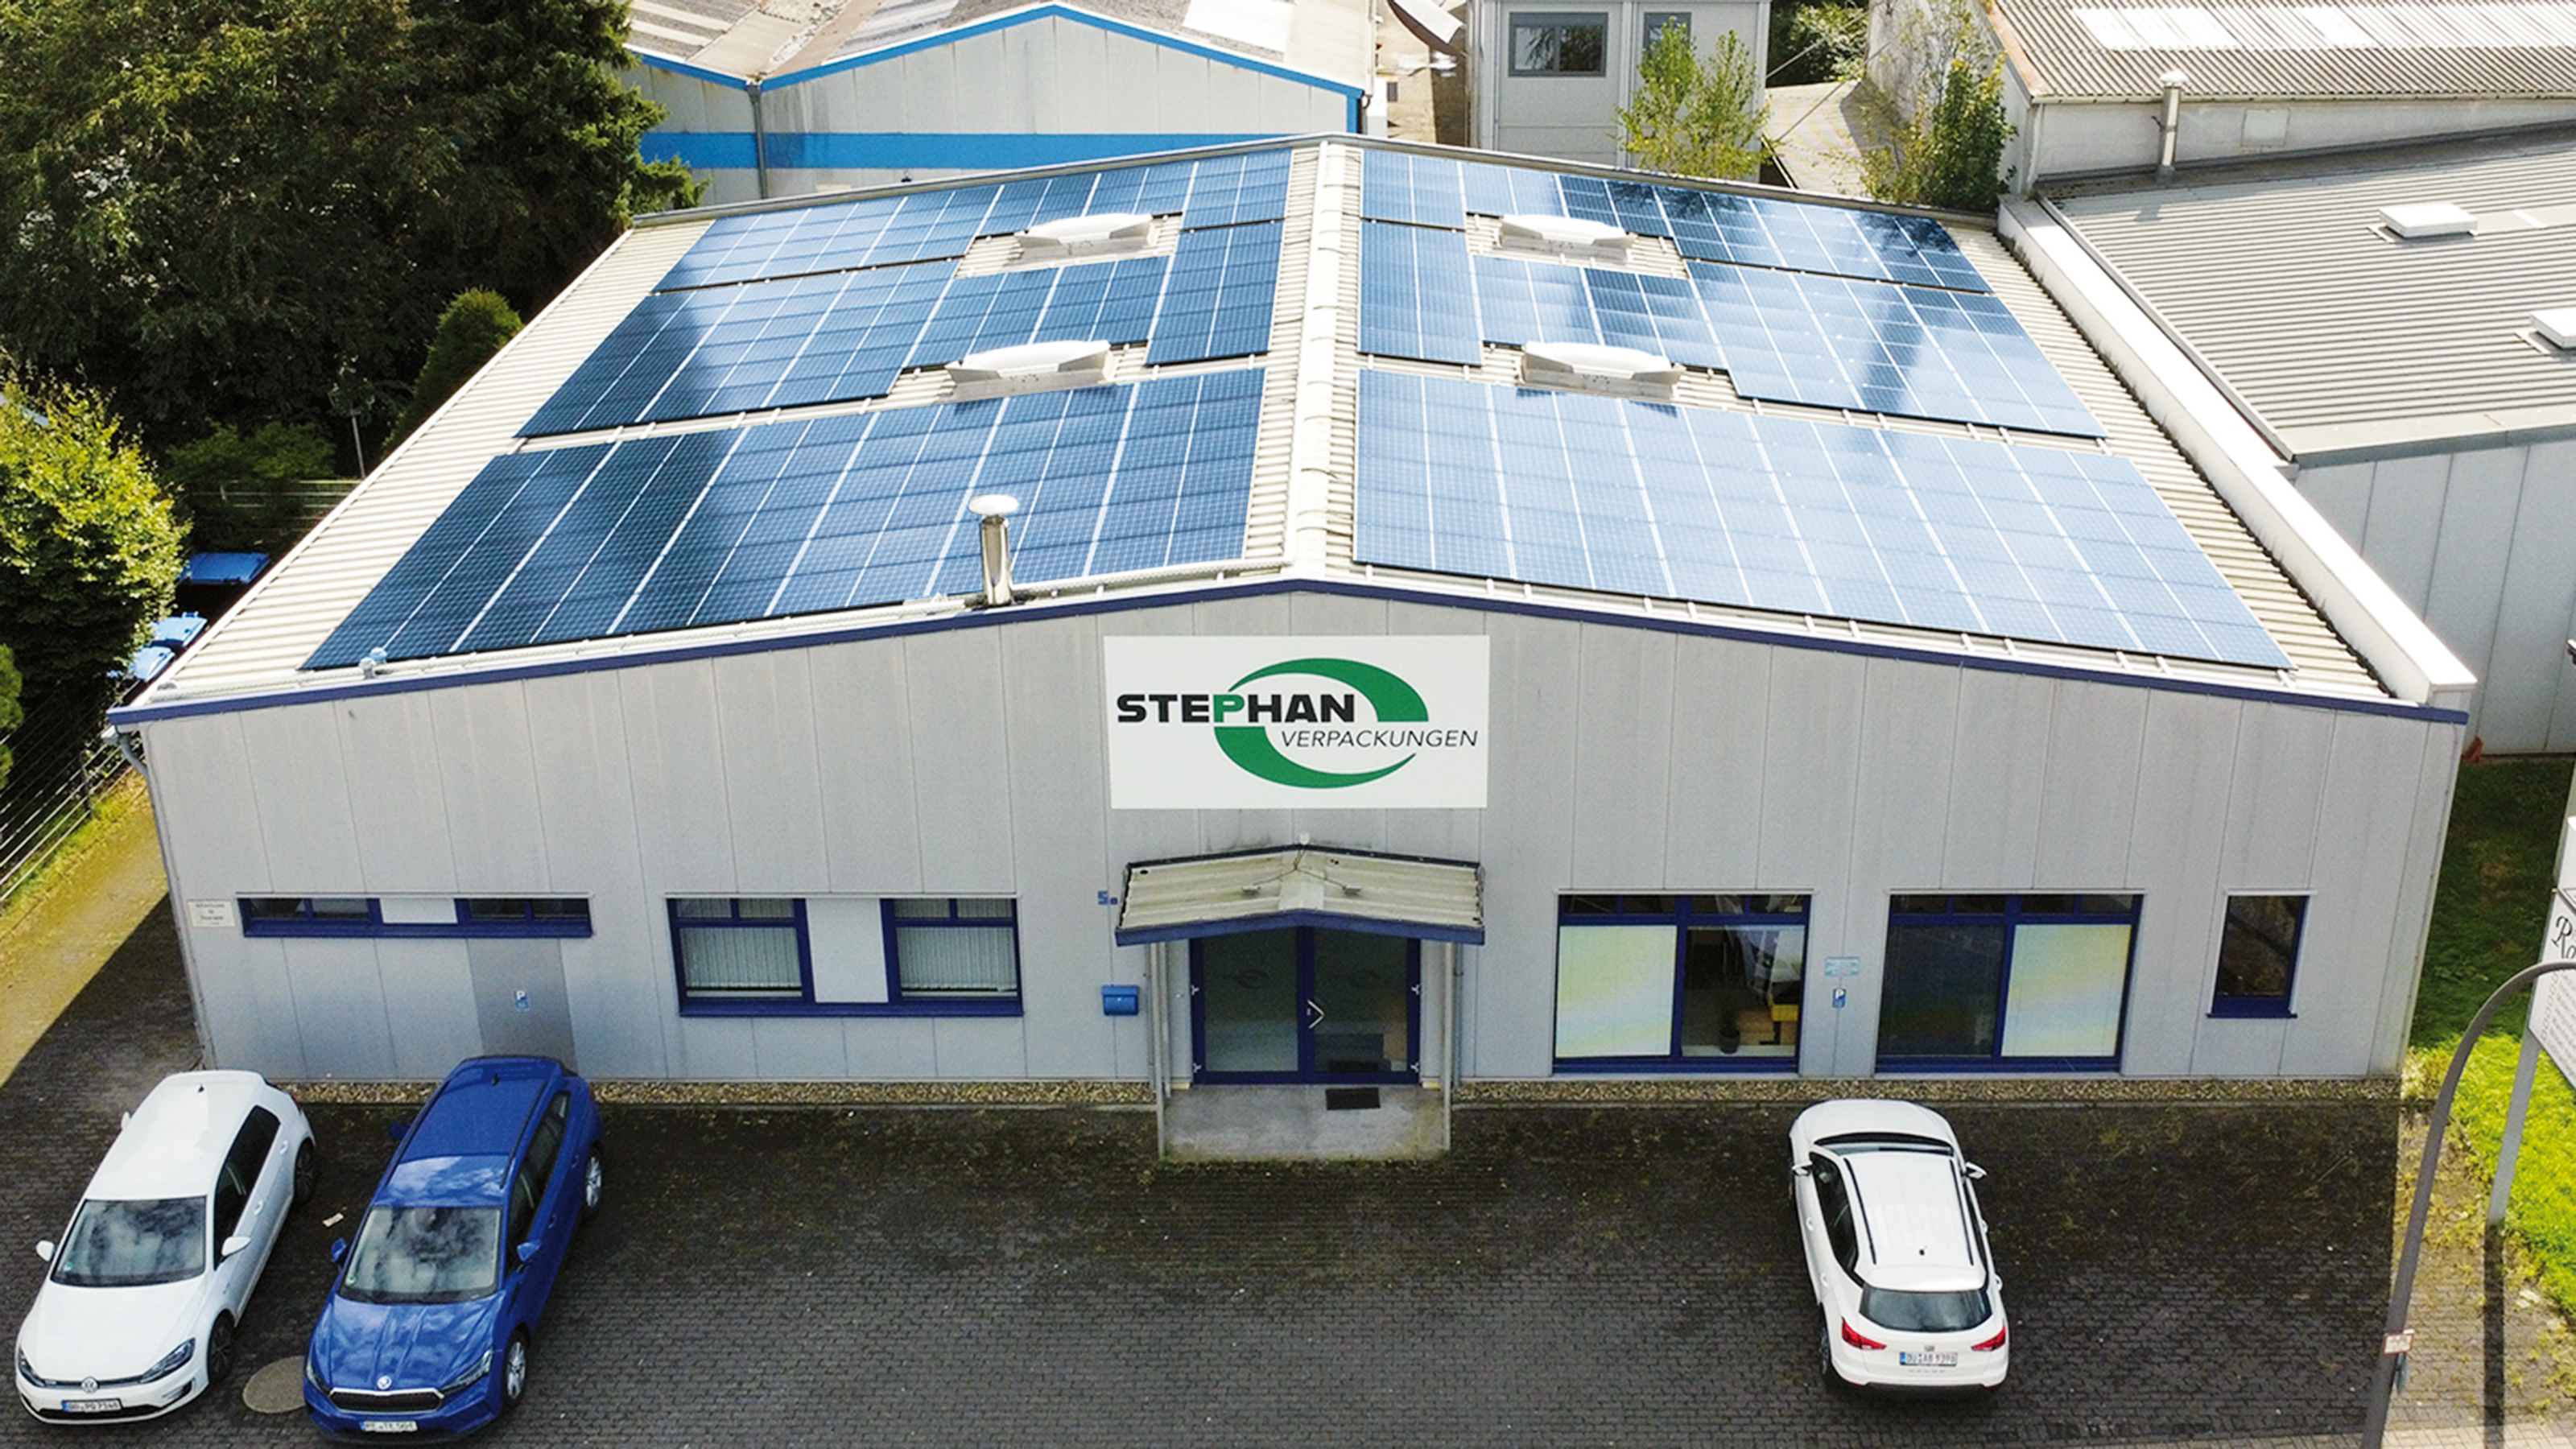 Photovoltaik-Anlage bei Stephan Schaustoffe GmbH in Oer-Erkenschwick